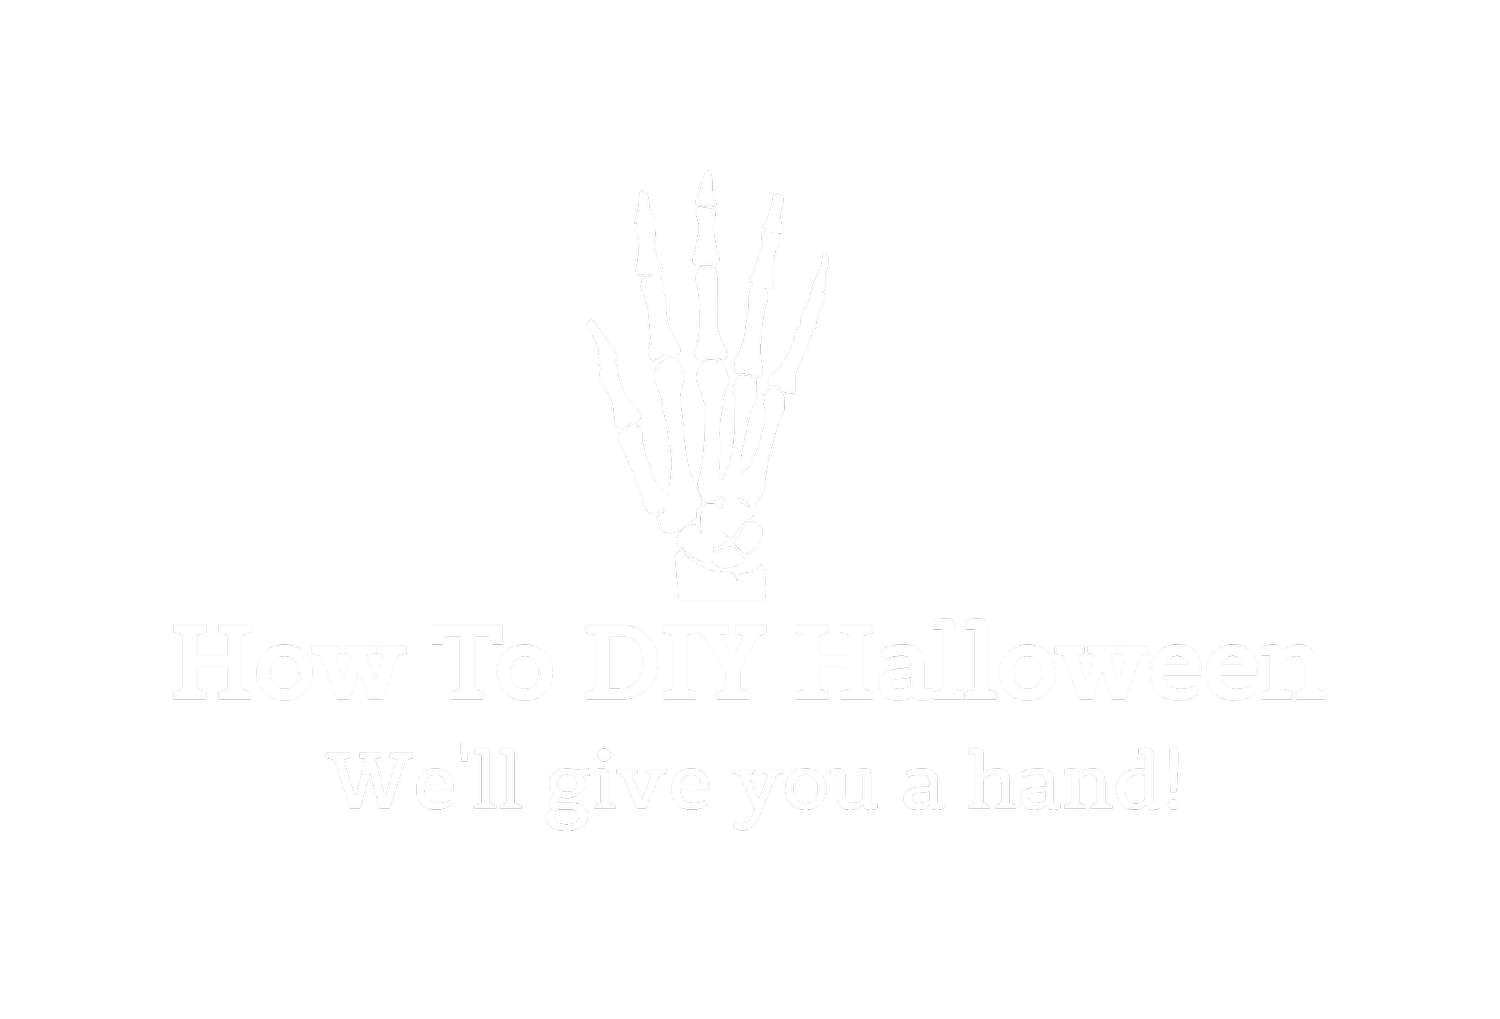 How To DIY Halloween